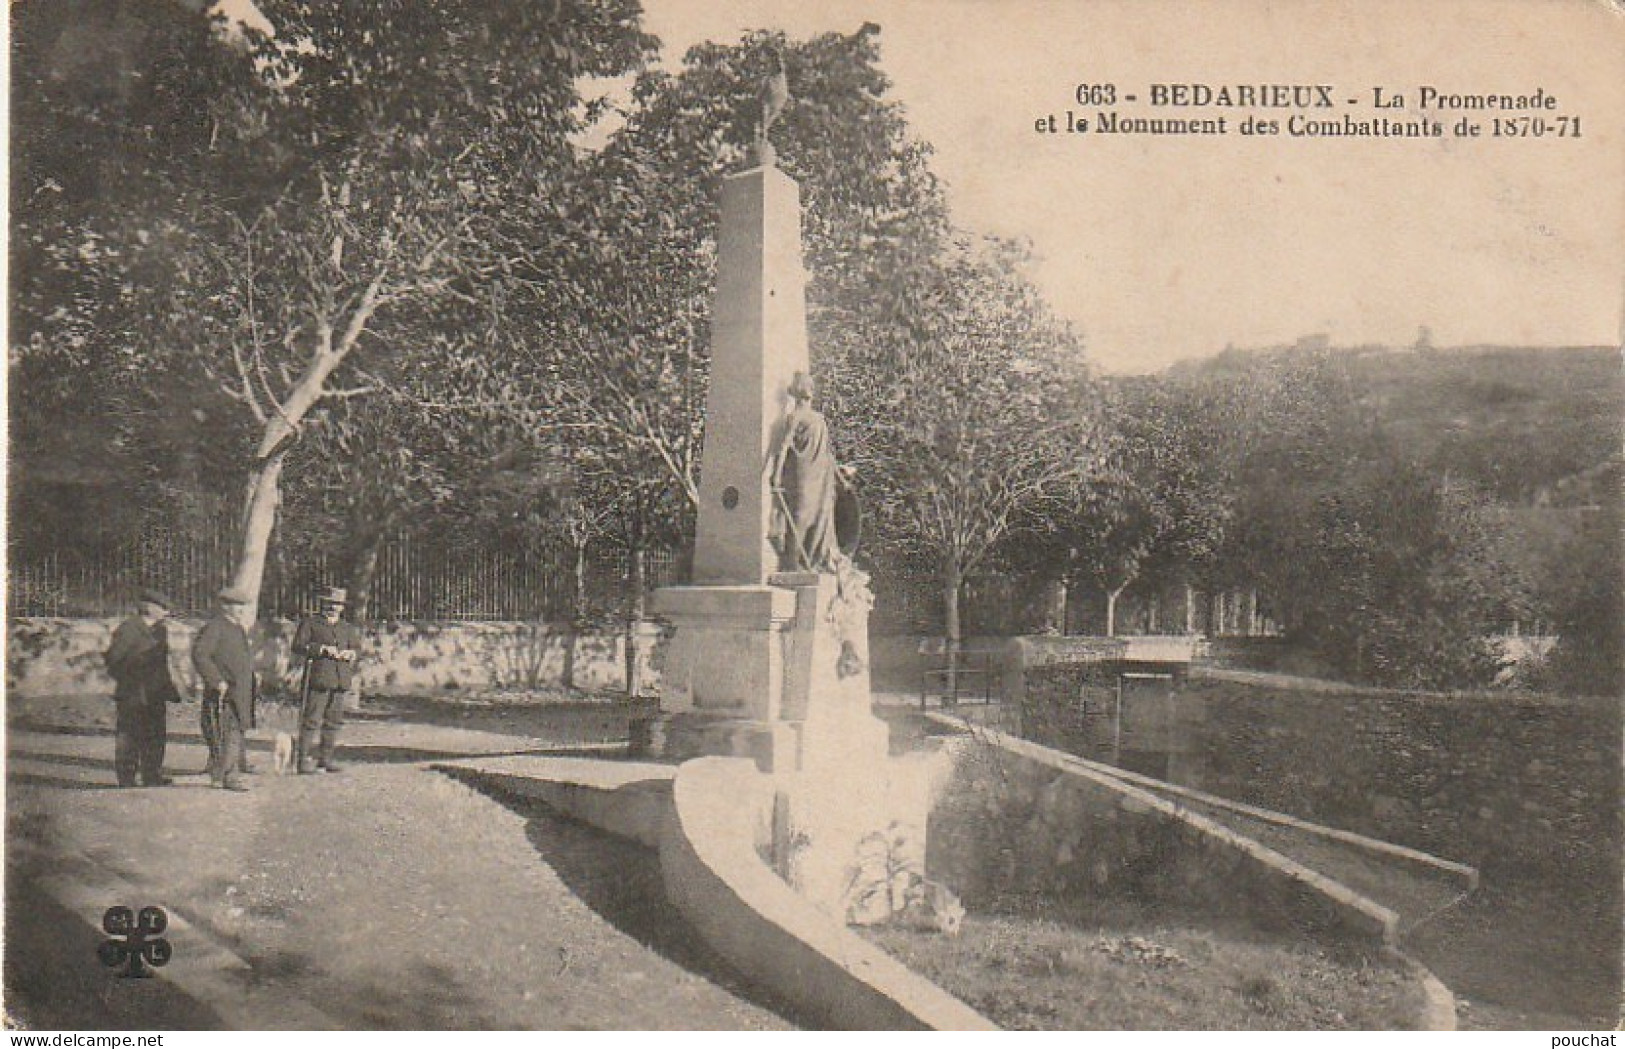 XXX -(34) BEDARIEUX - LA PROMENADE ET LE MONUMENT DES COMBATTANTS DE 1870/71 - TAMPON REGIMENT D' INFANTERIE - 2 SCANS - Bedarieux